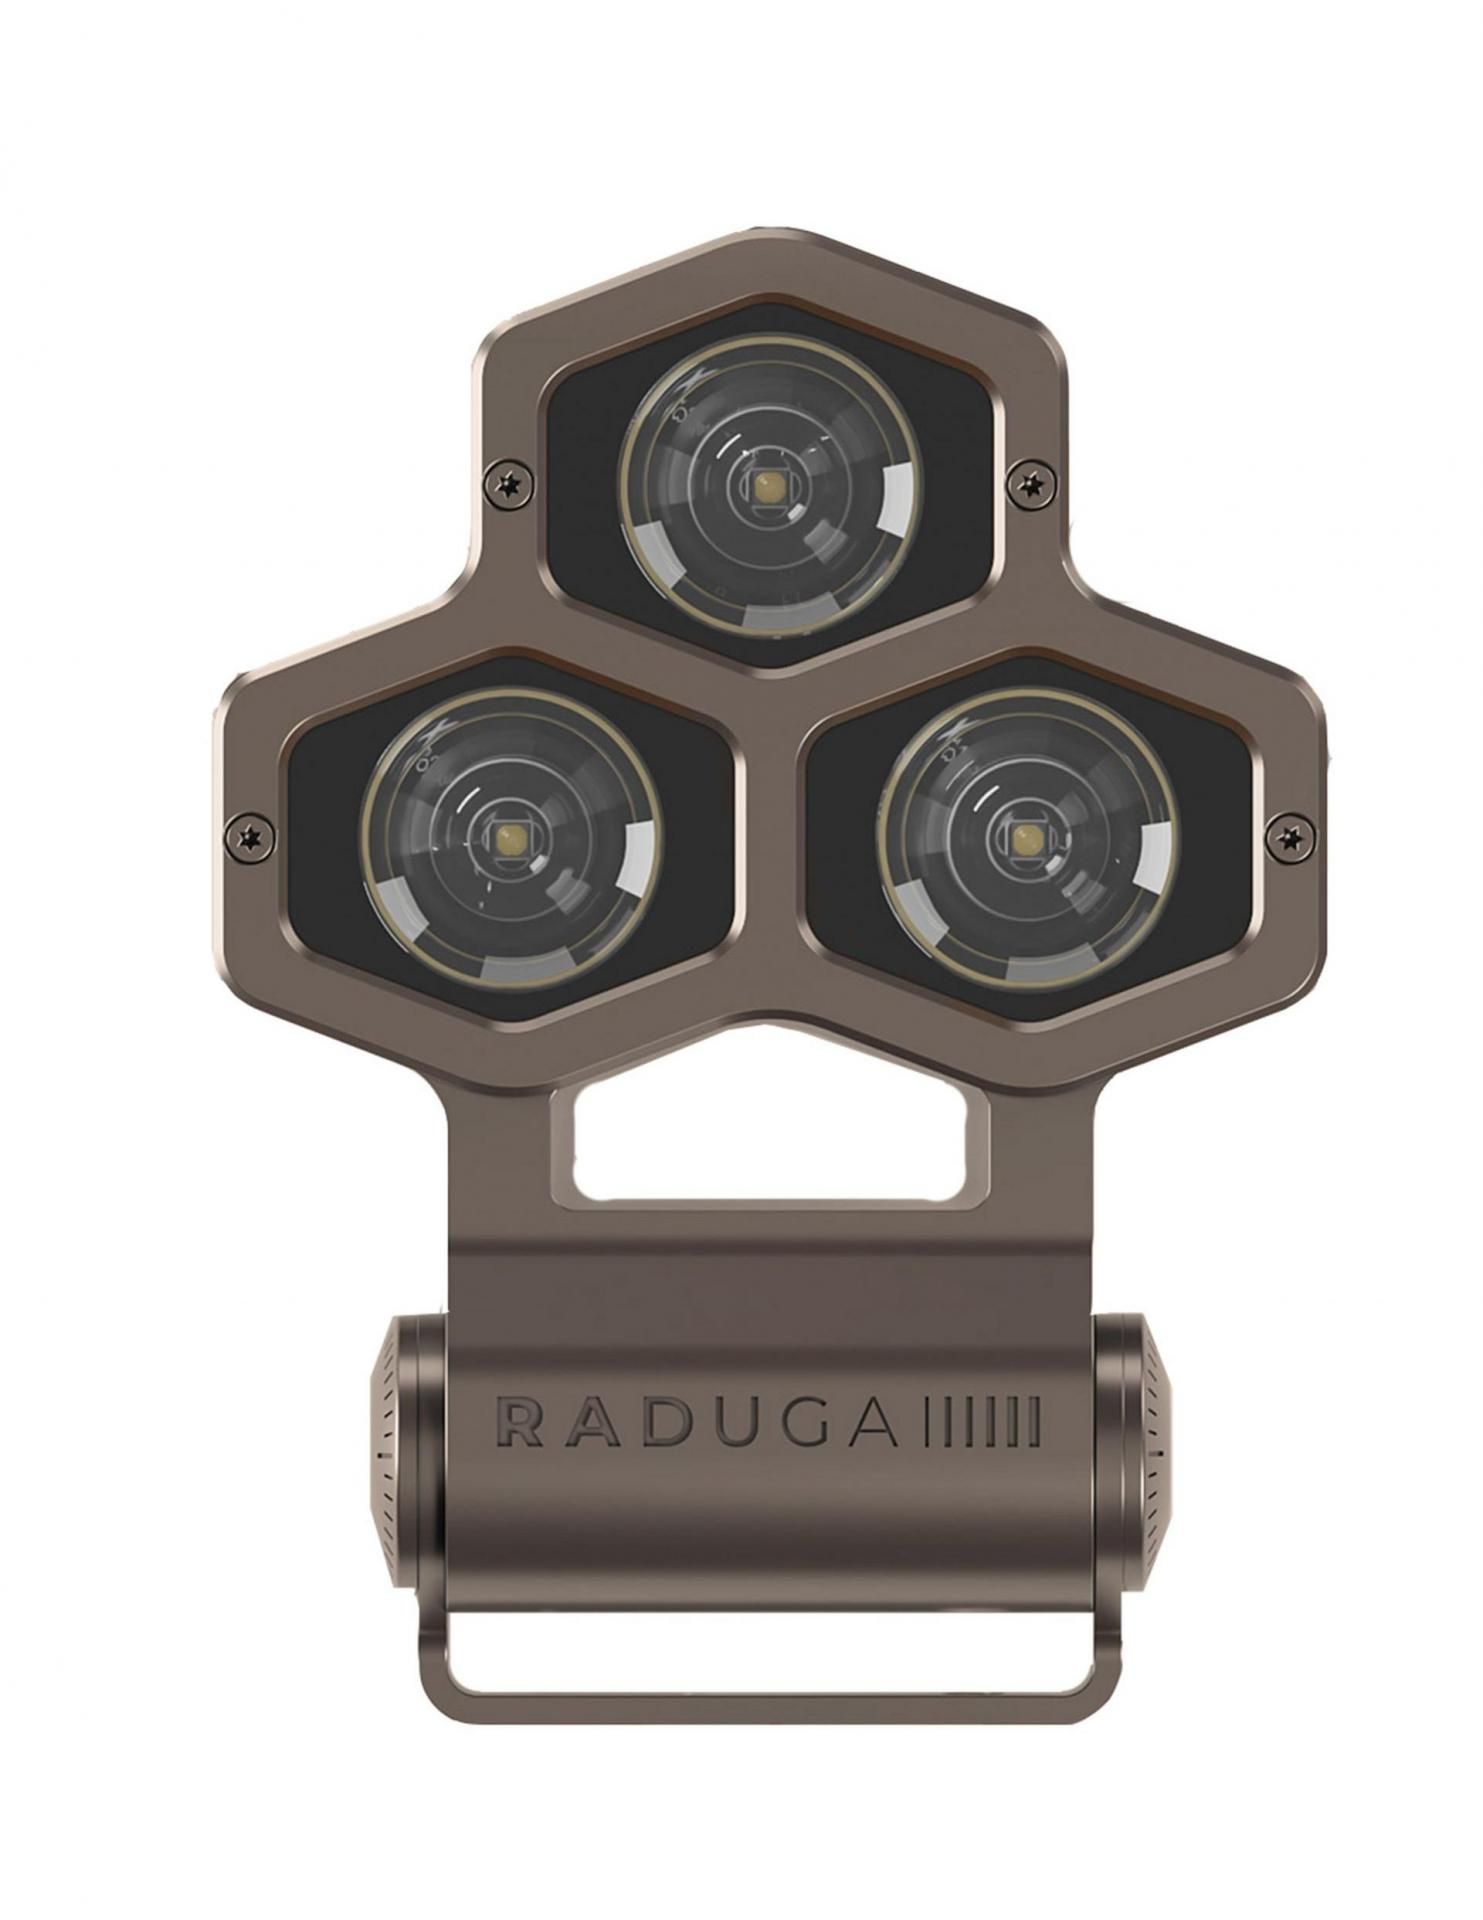 Купить прожектор светодиодный LED.  Прожектор архитектурный на фасад бренда RADUGA - Купить прожектор светодиодный LED.  Прожектор архитектурный на фасад бренда RADUGA